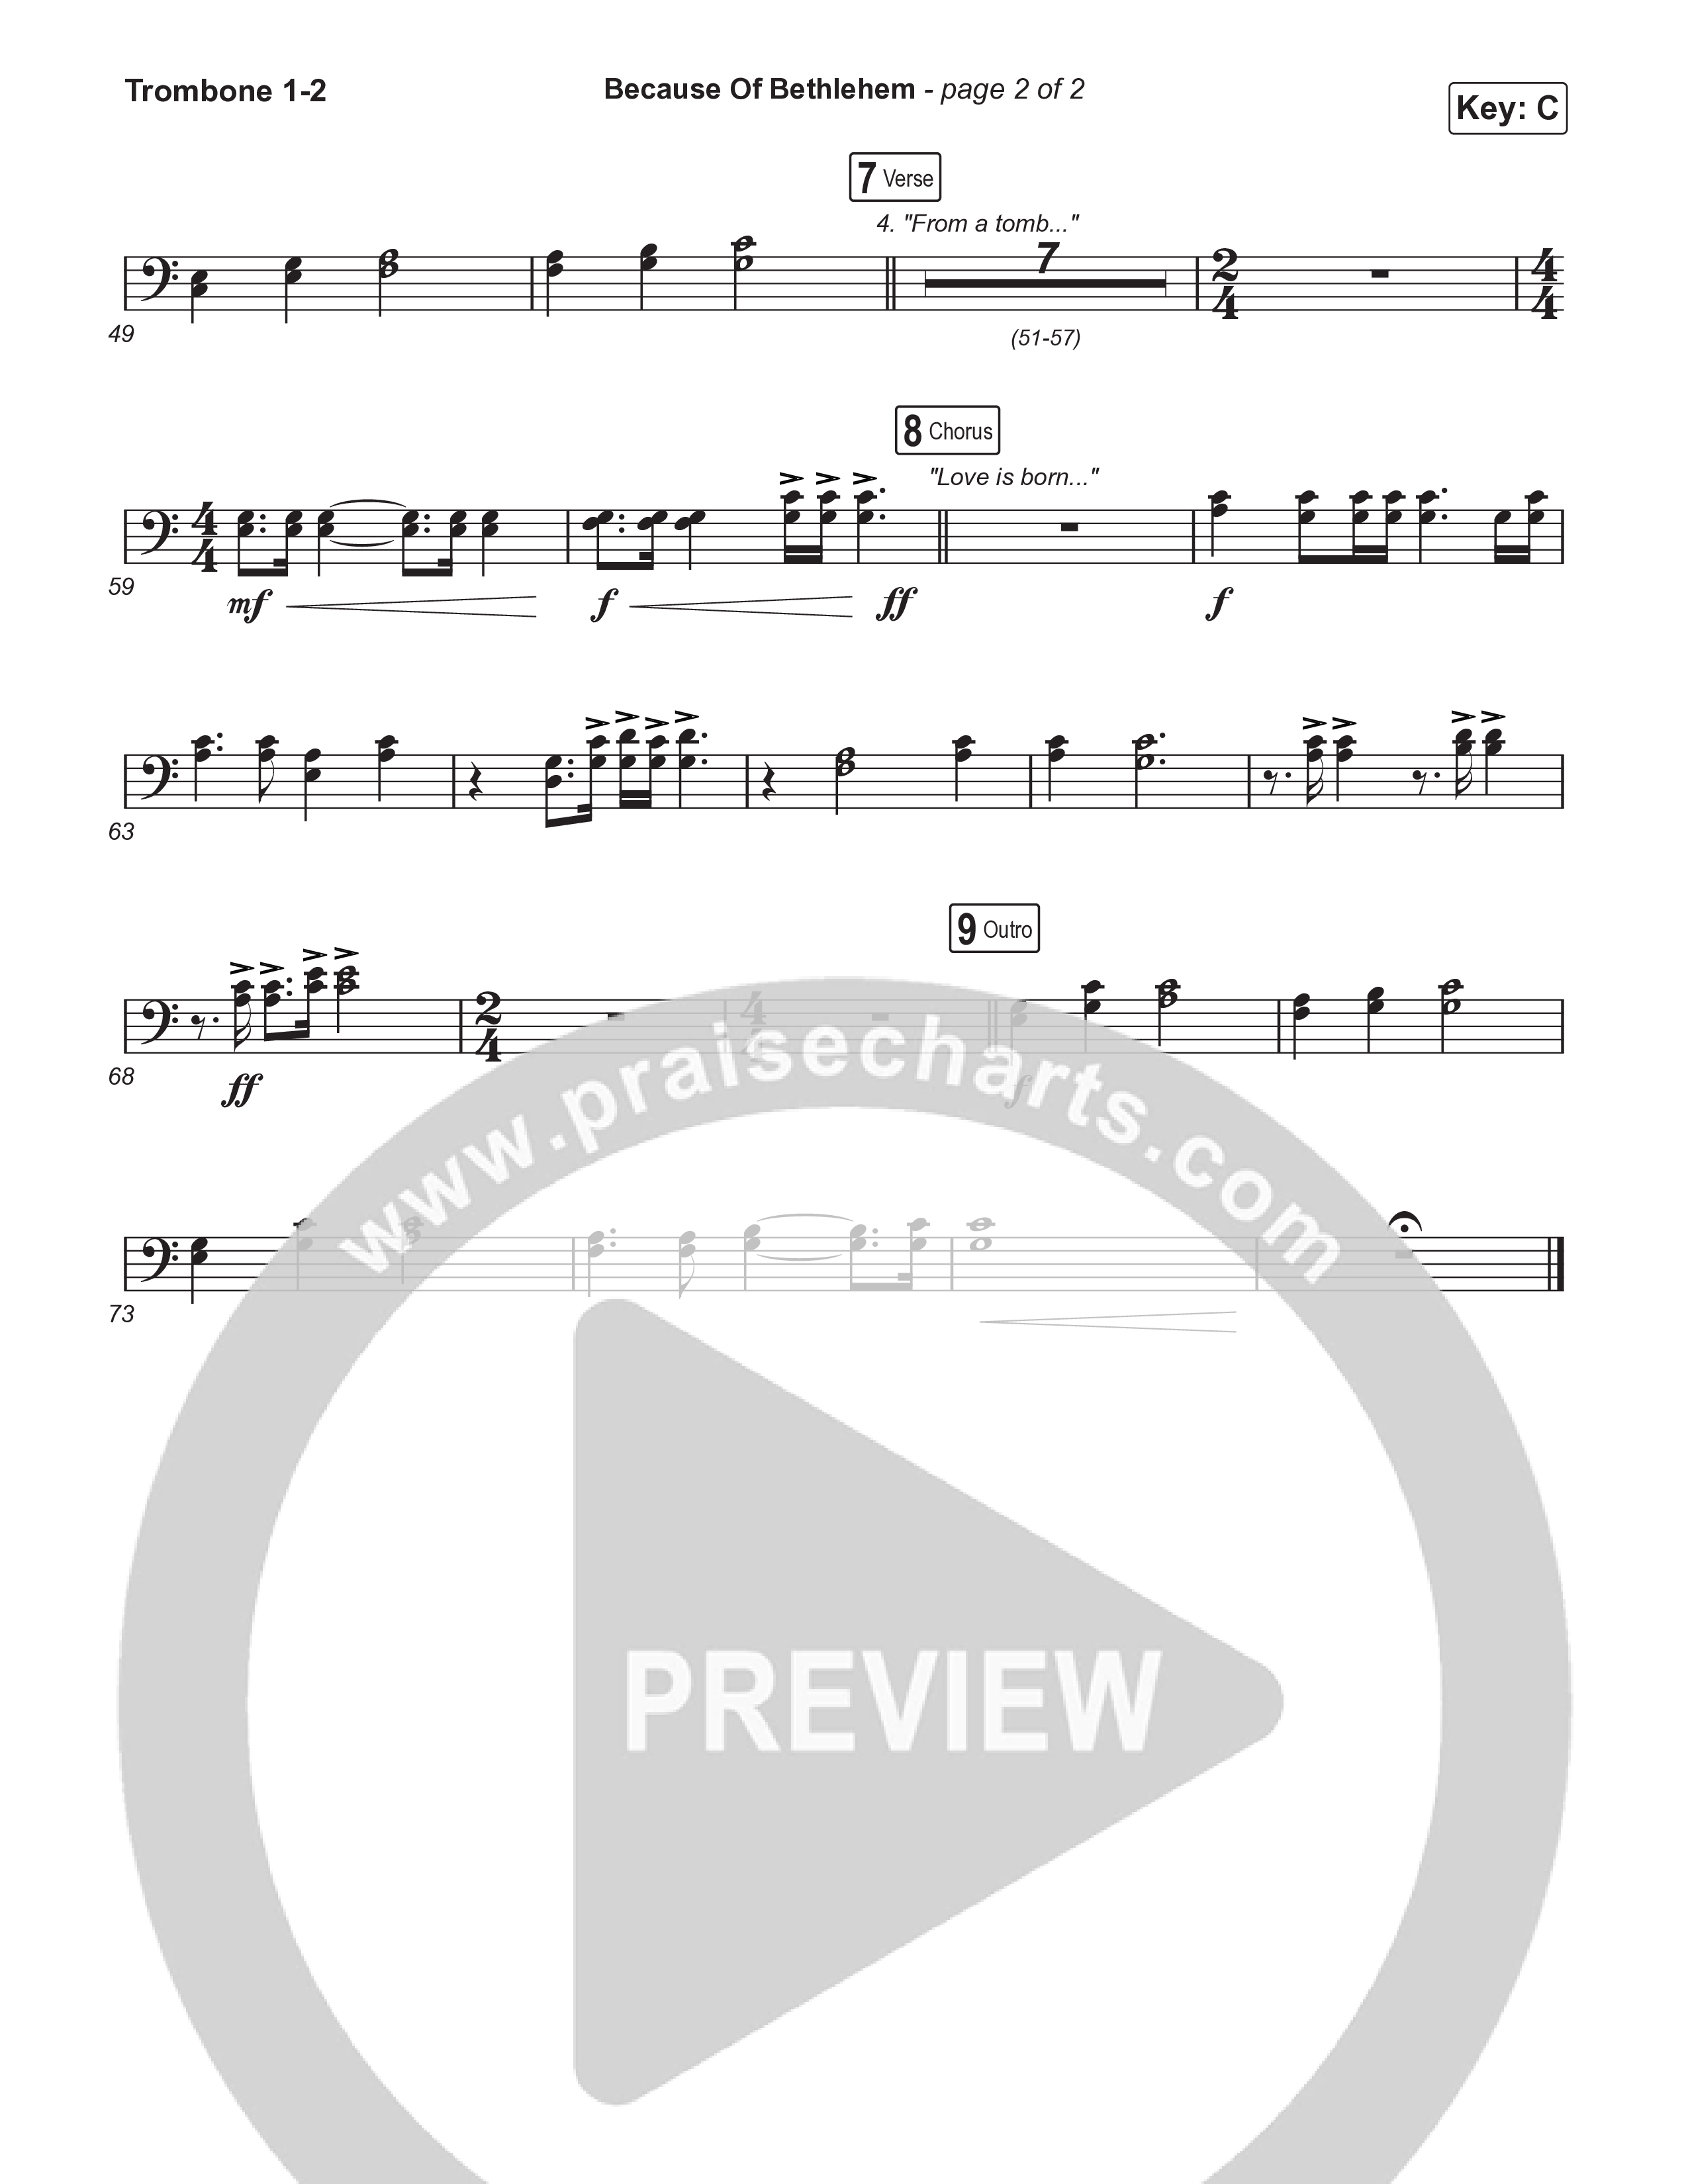 Because Of Bethlehem (Sing It Now) Trombone 1/2 (Matthew West / Arr. Luke Gambill)